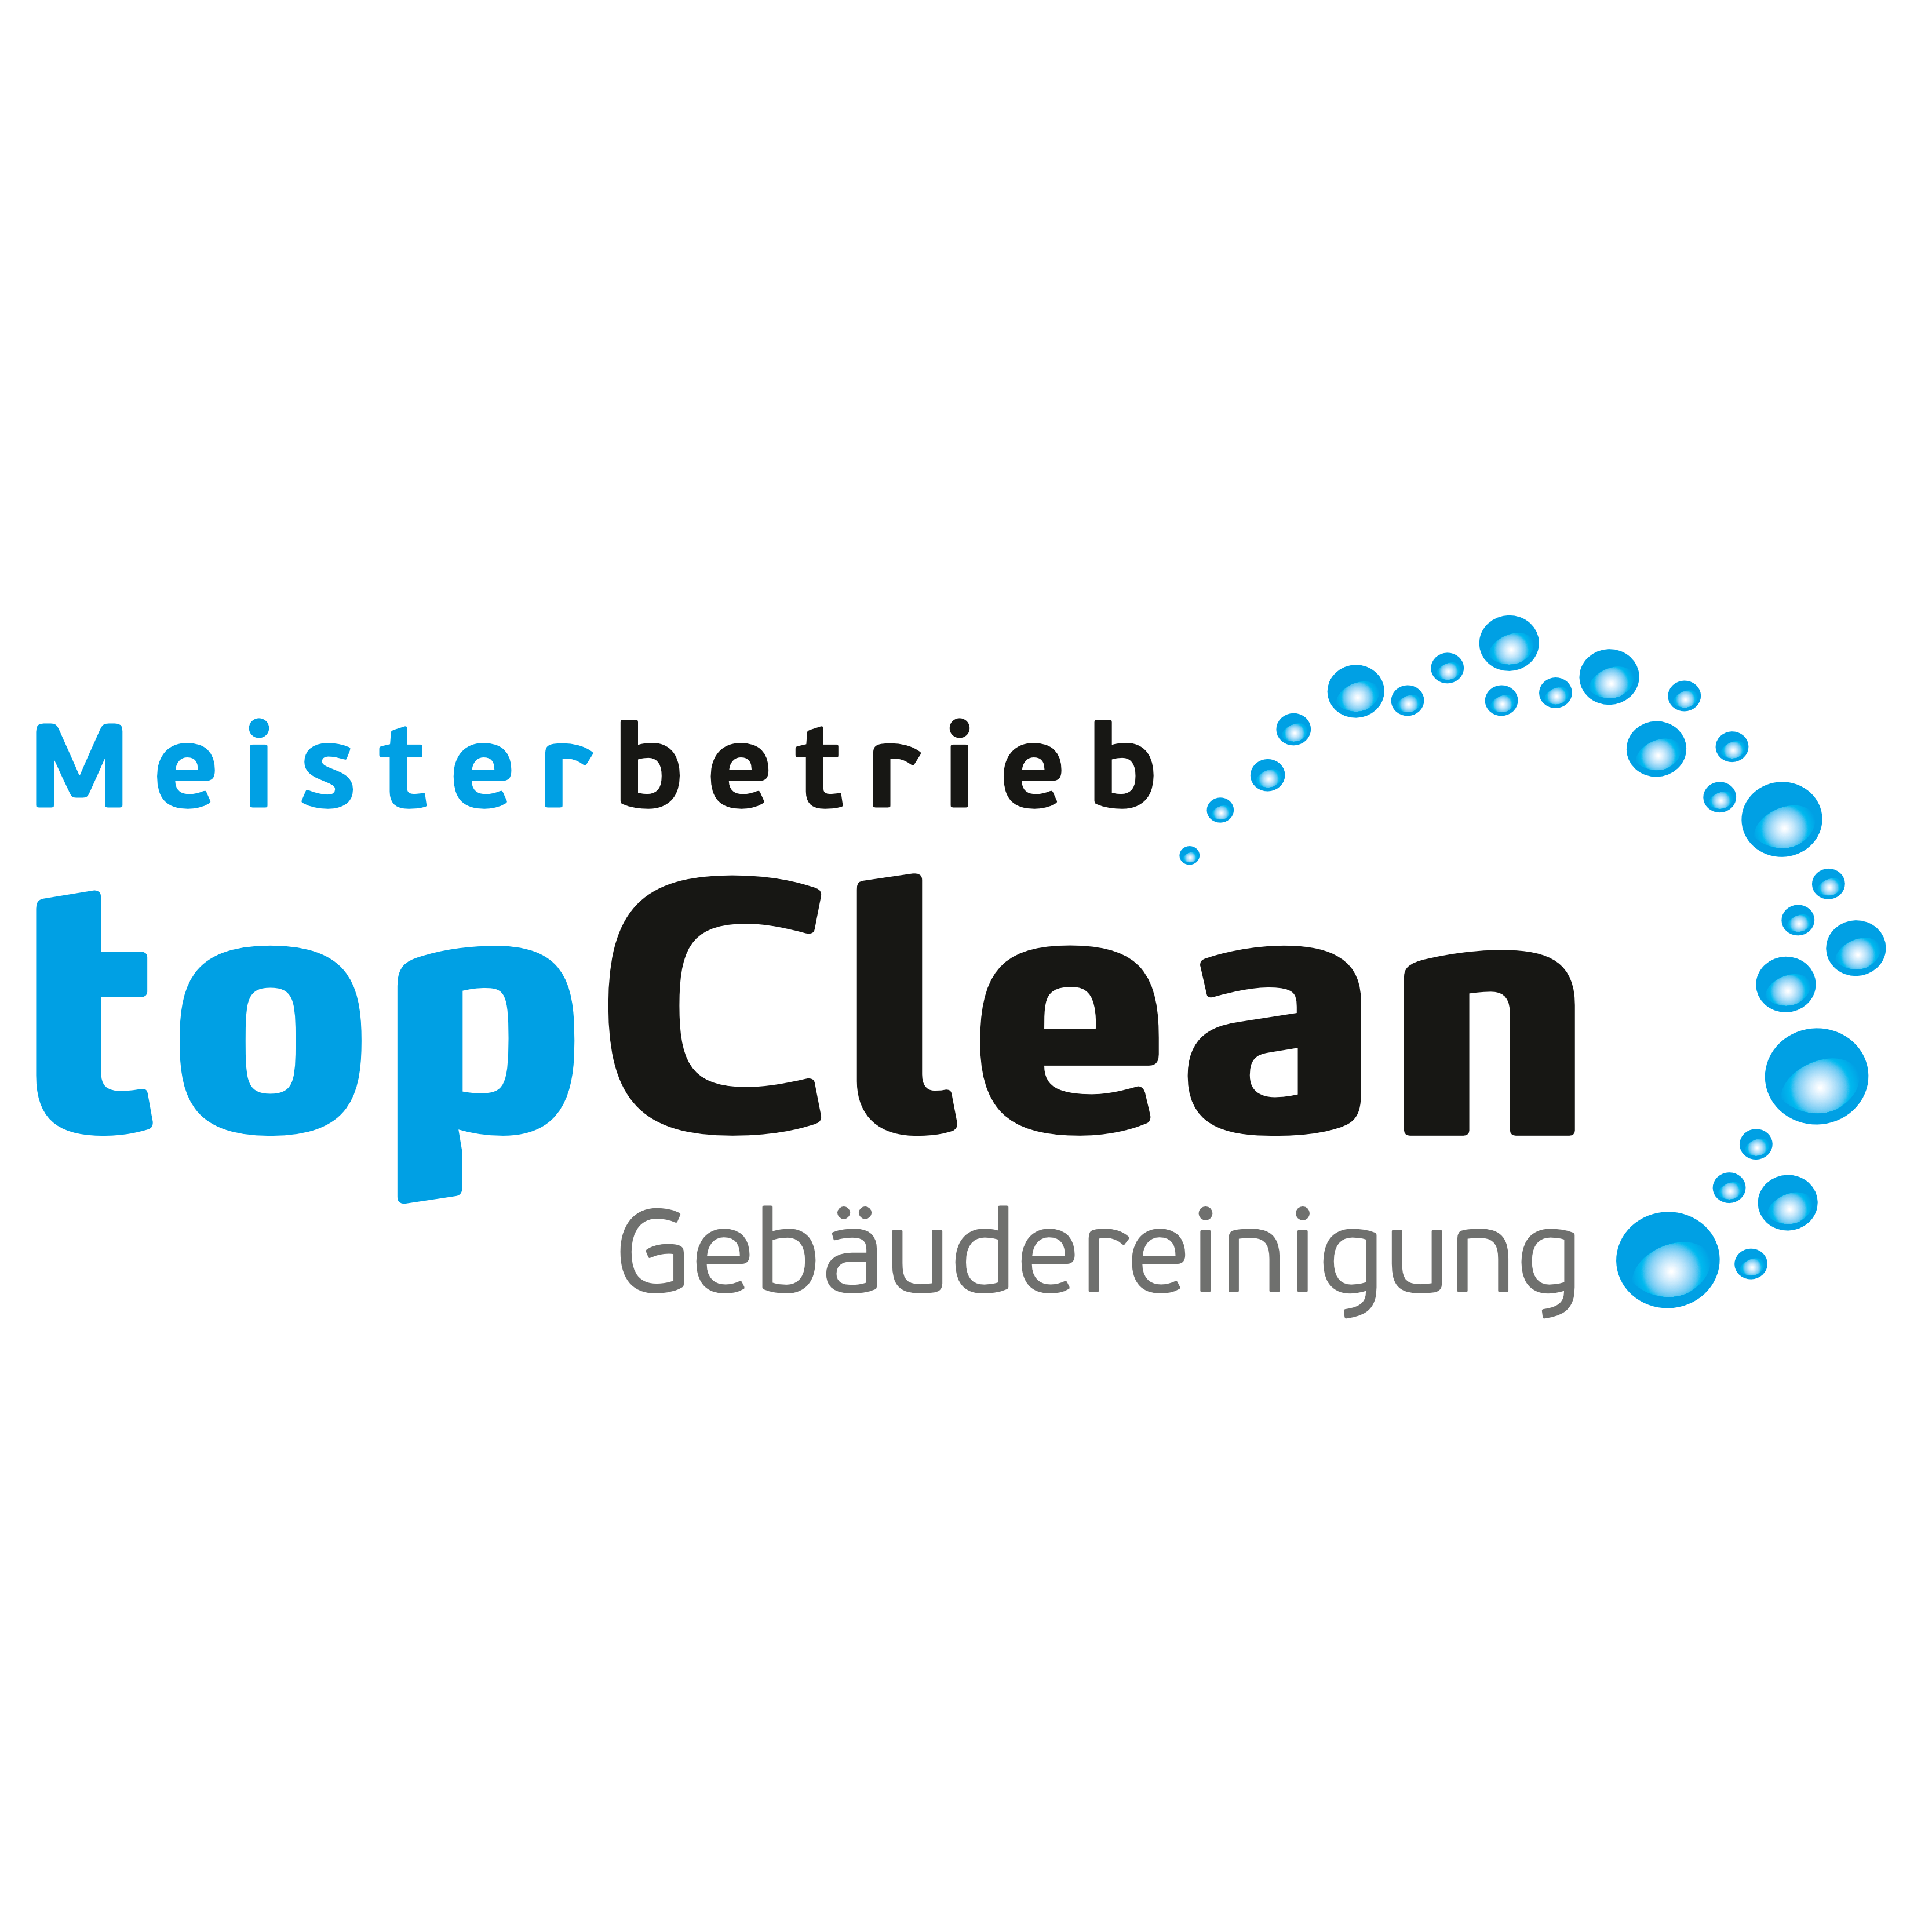 topClean Gebäudereinigung GmbH & Co. KG Lauf an der Pegnitz in Neunkirchen am Sand - Logo